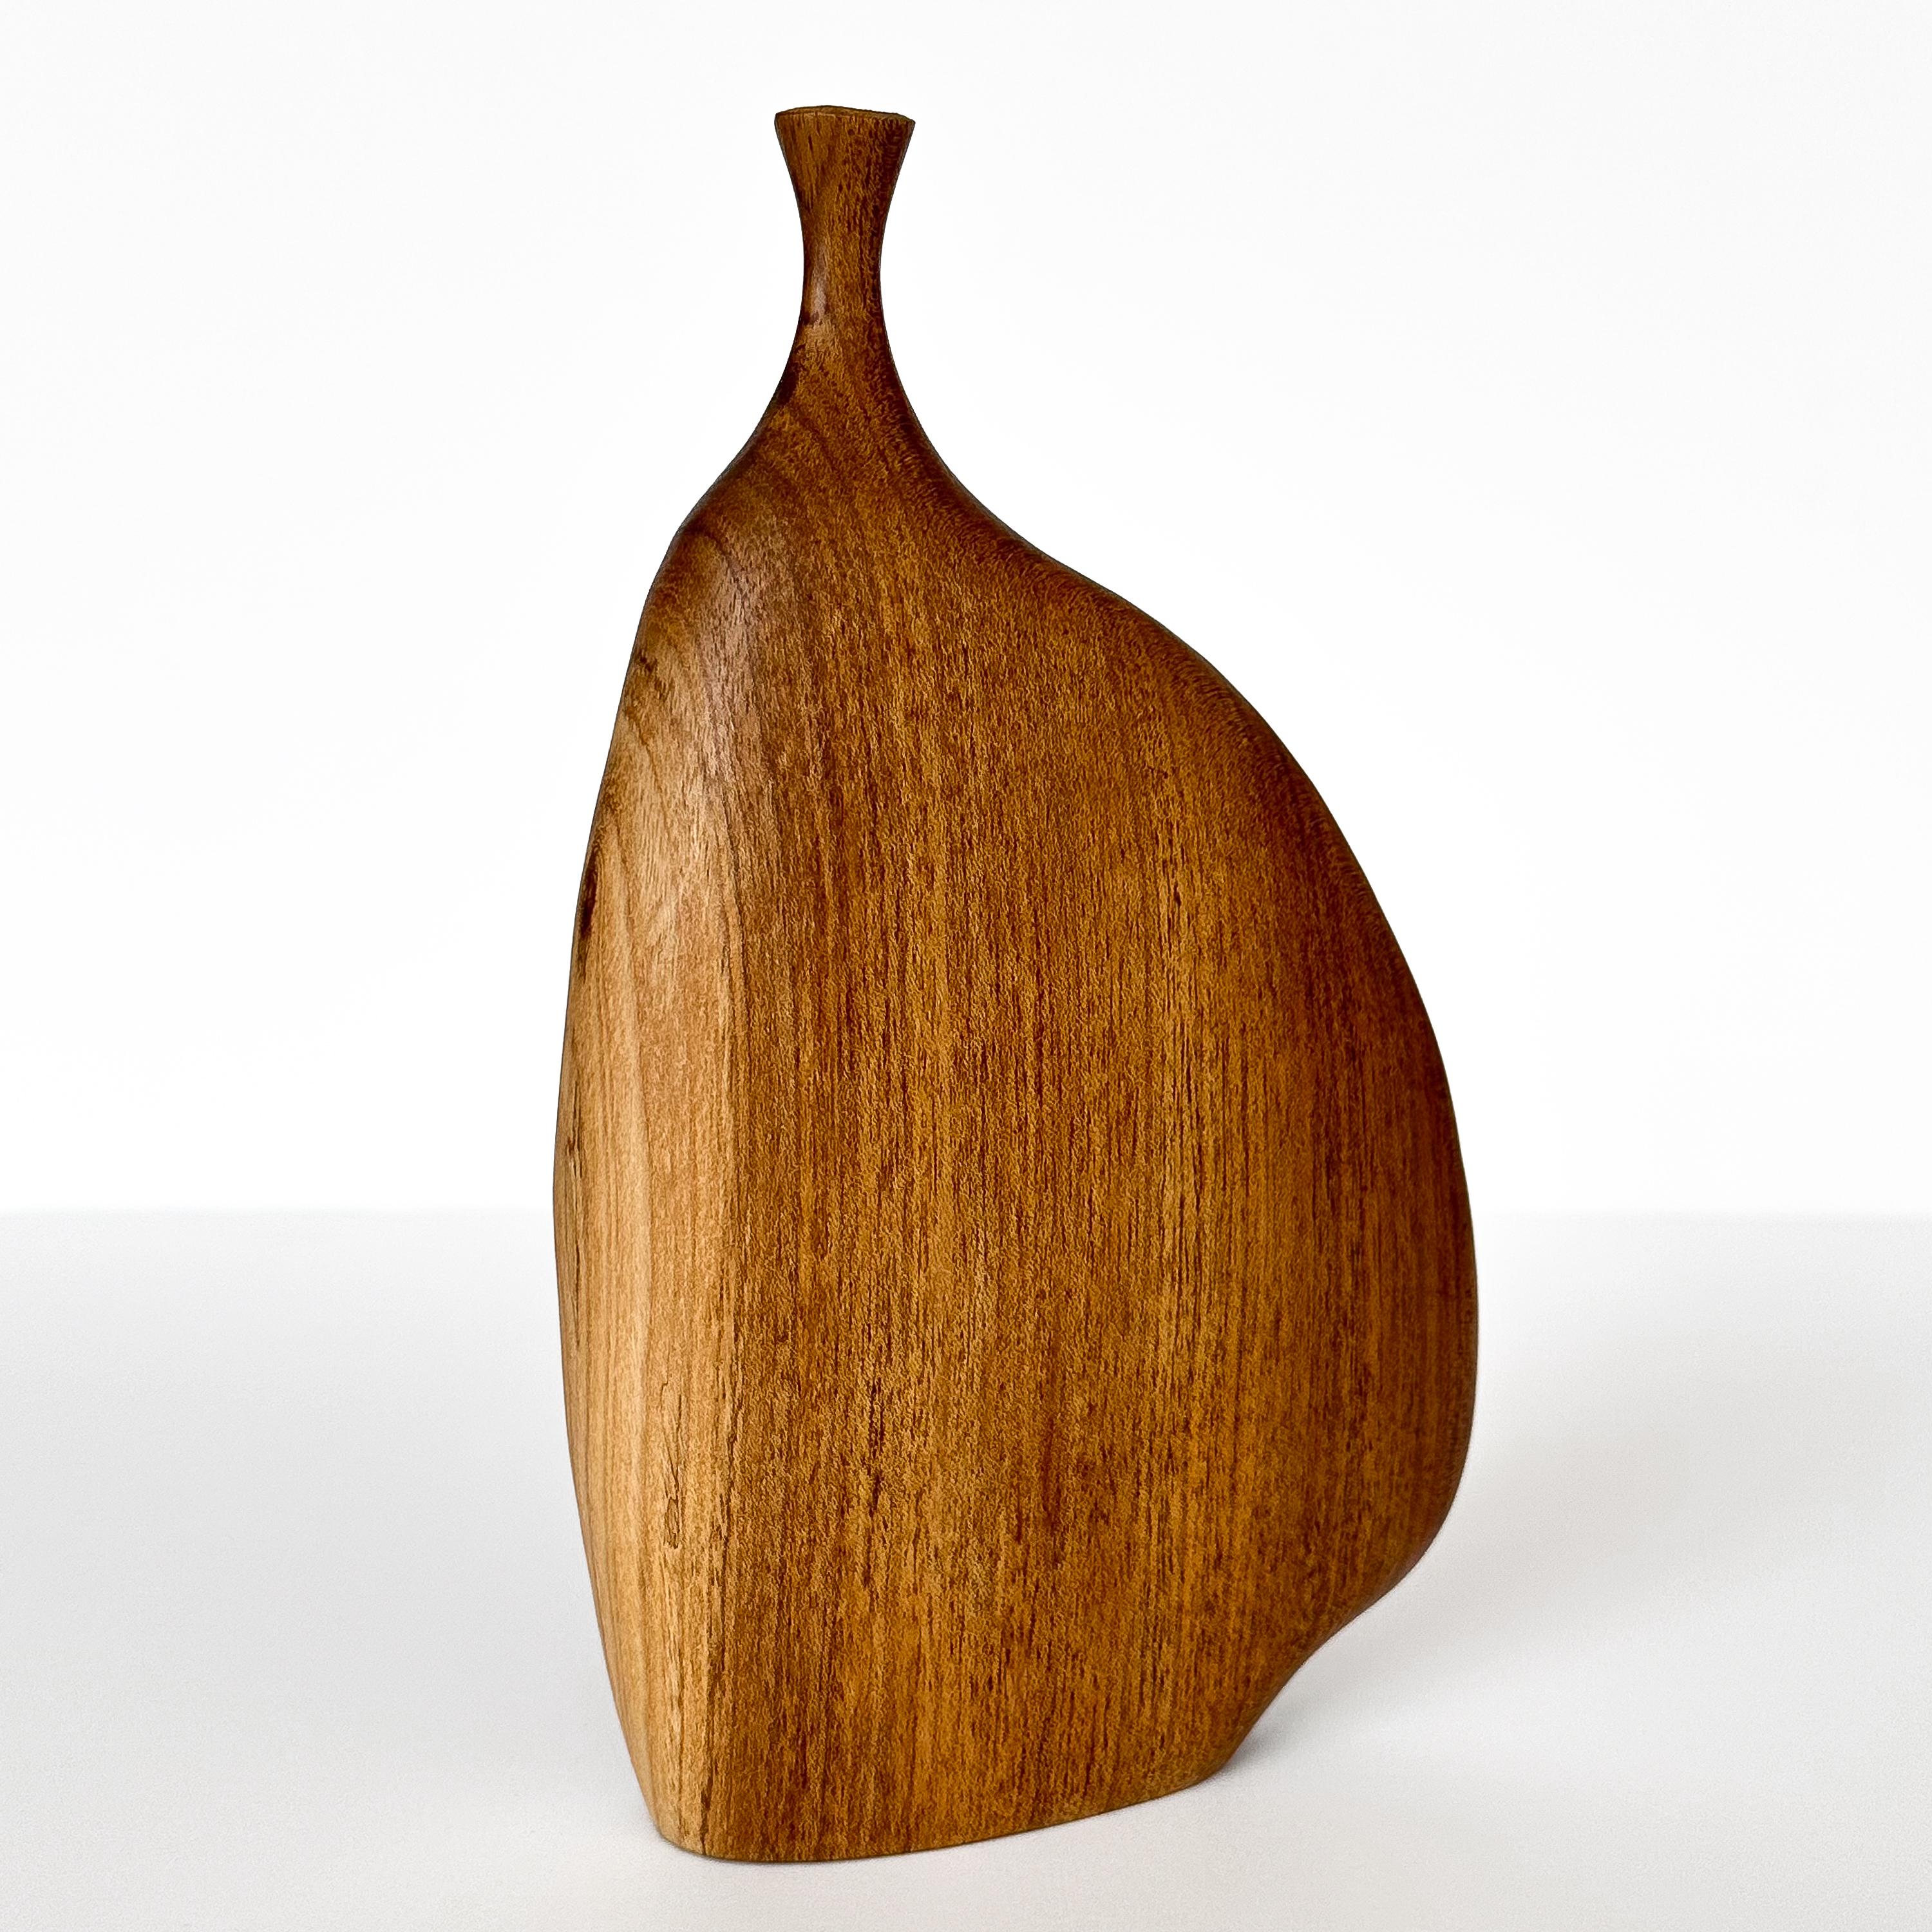 Walnut Doug Ayers Signed Carved / Turned Wood Weed Vase